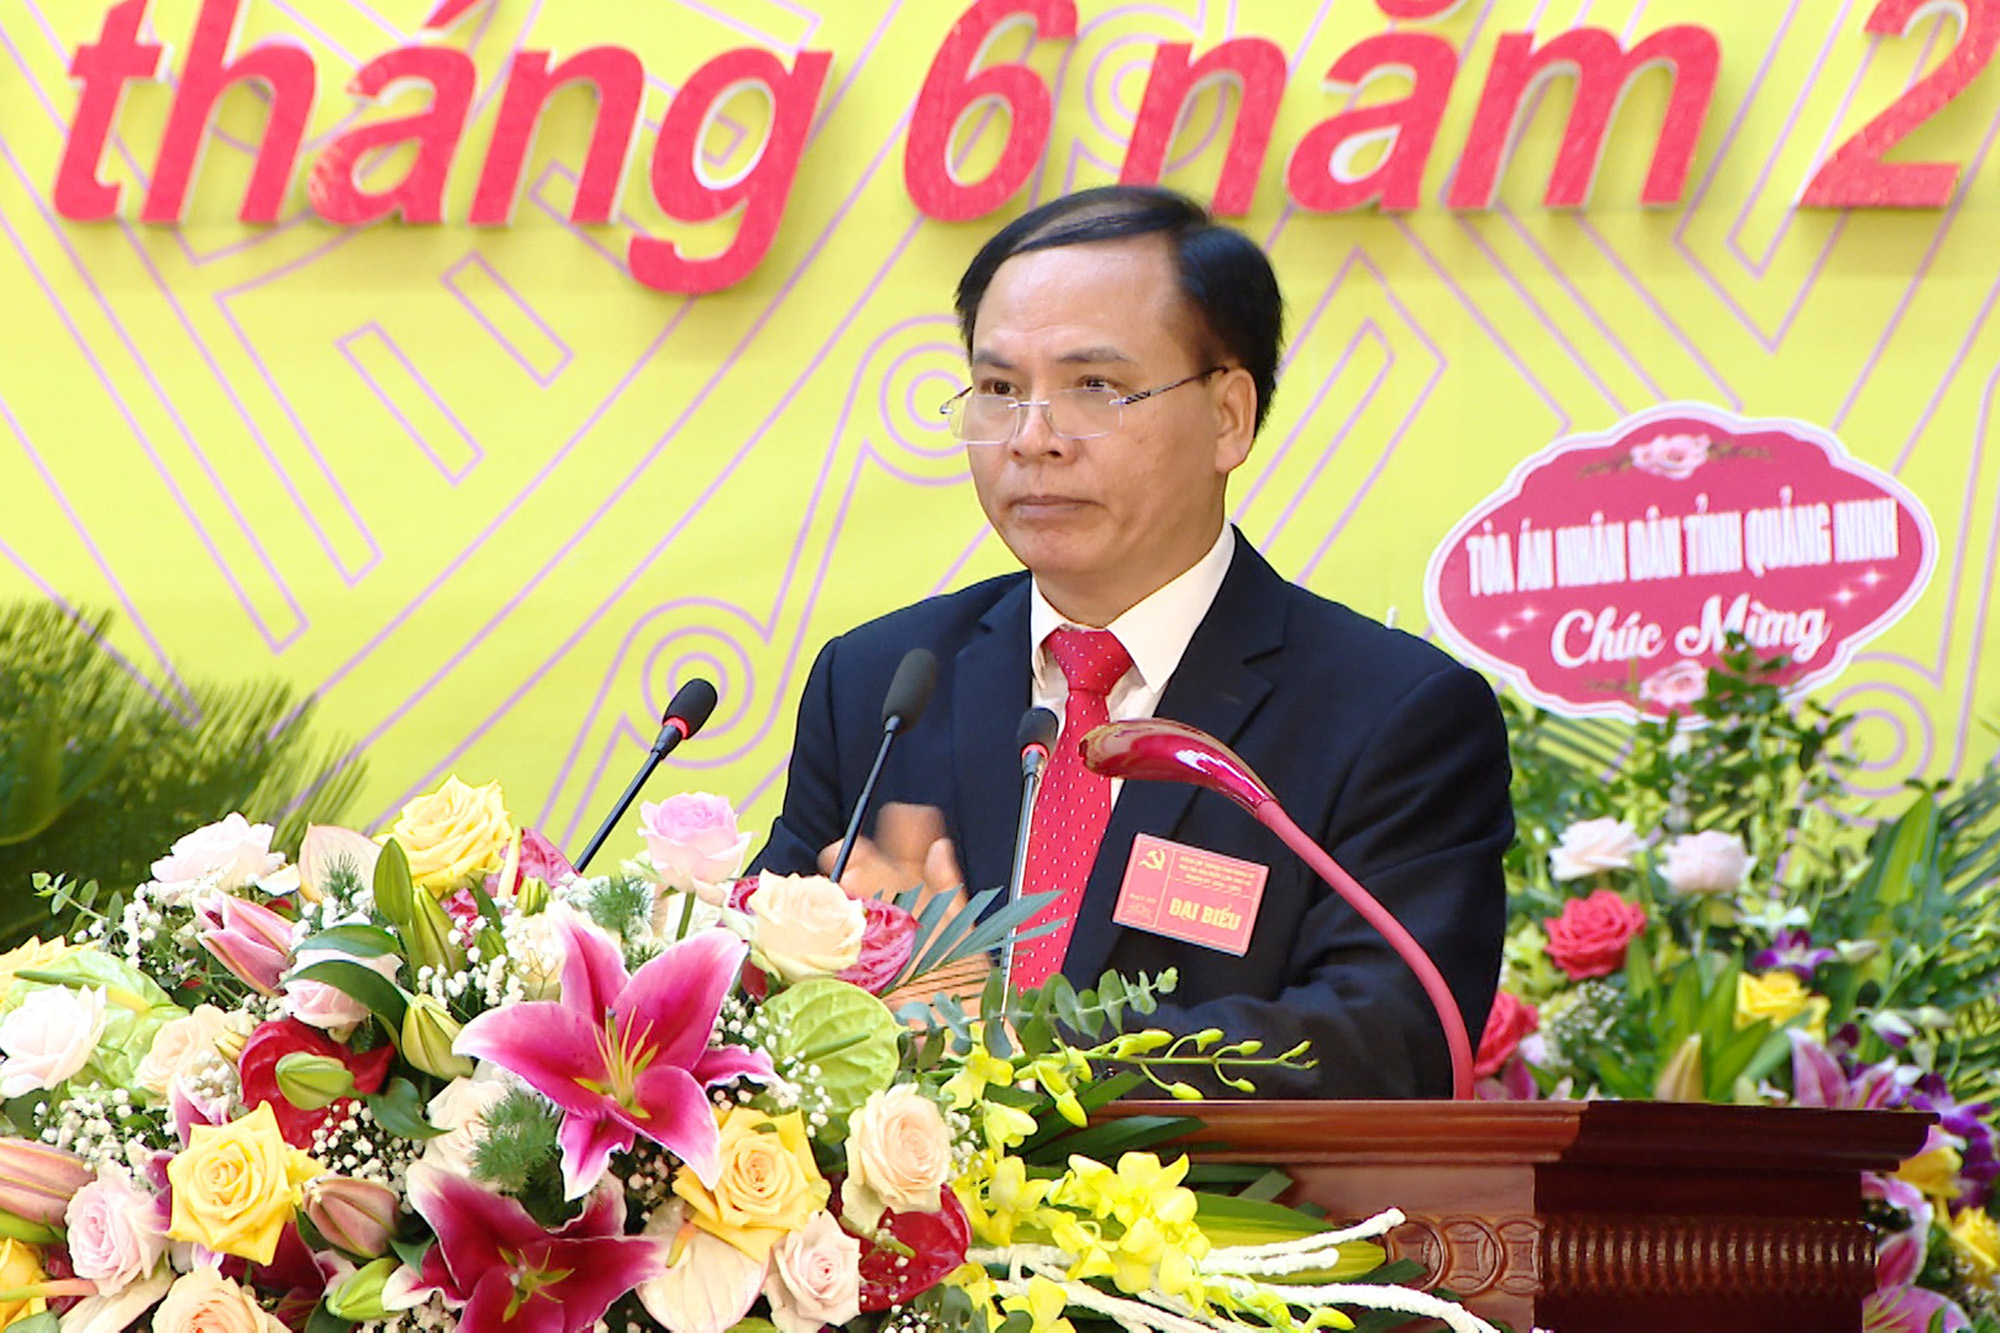 Đồng chí Trần Văn Lâm, Bí thư Thành ủy Uông Bí, trình bày báo cáo chính trị tại đại hội.